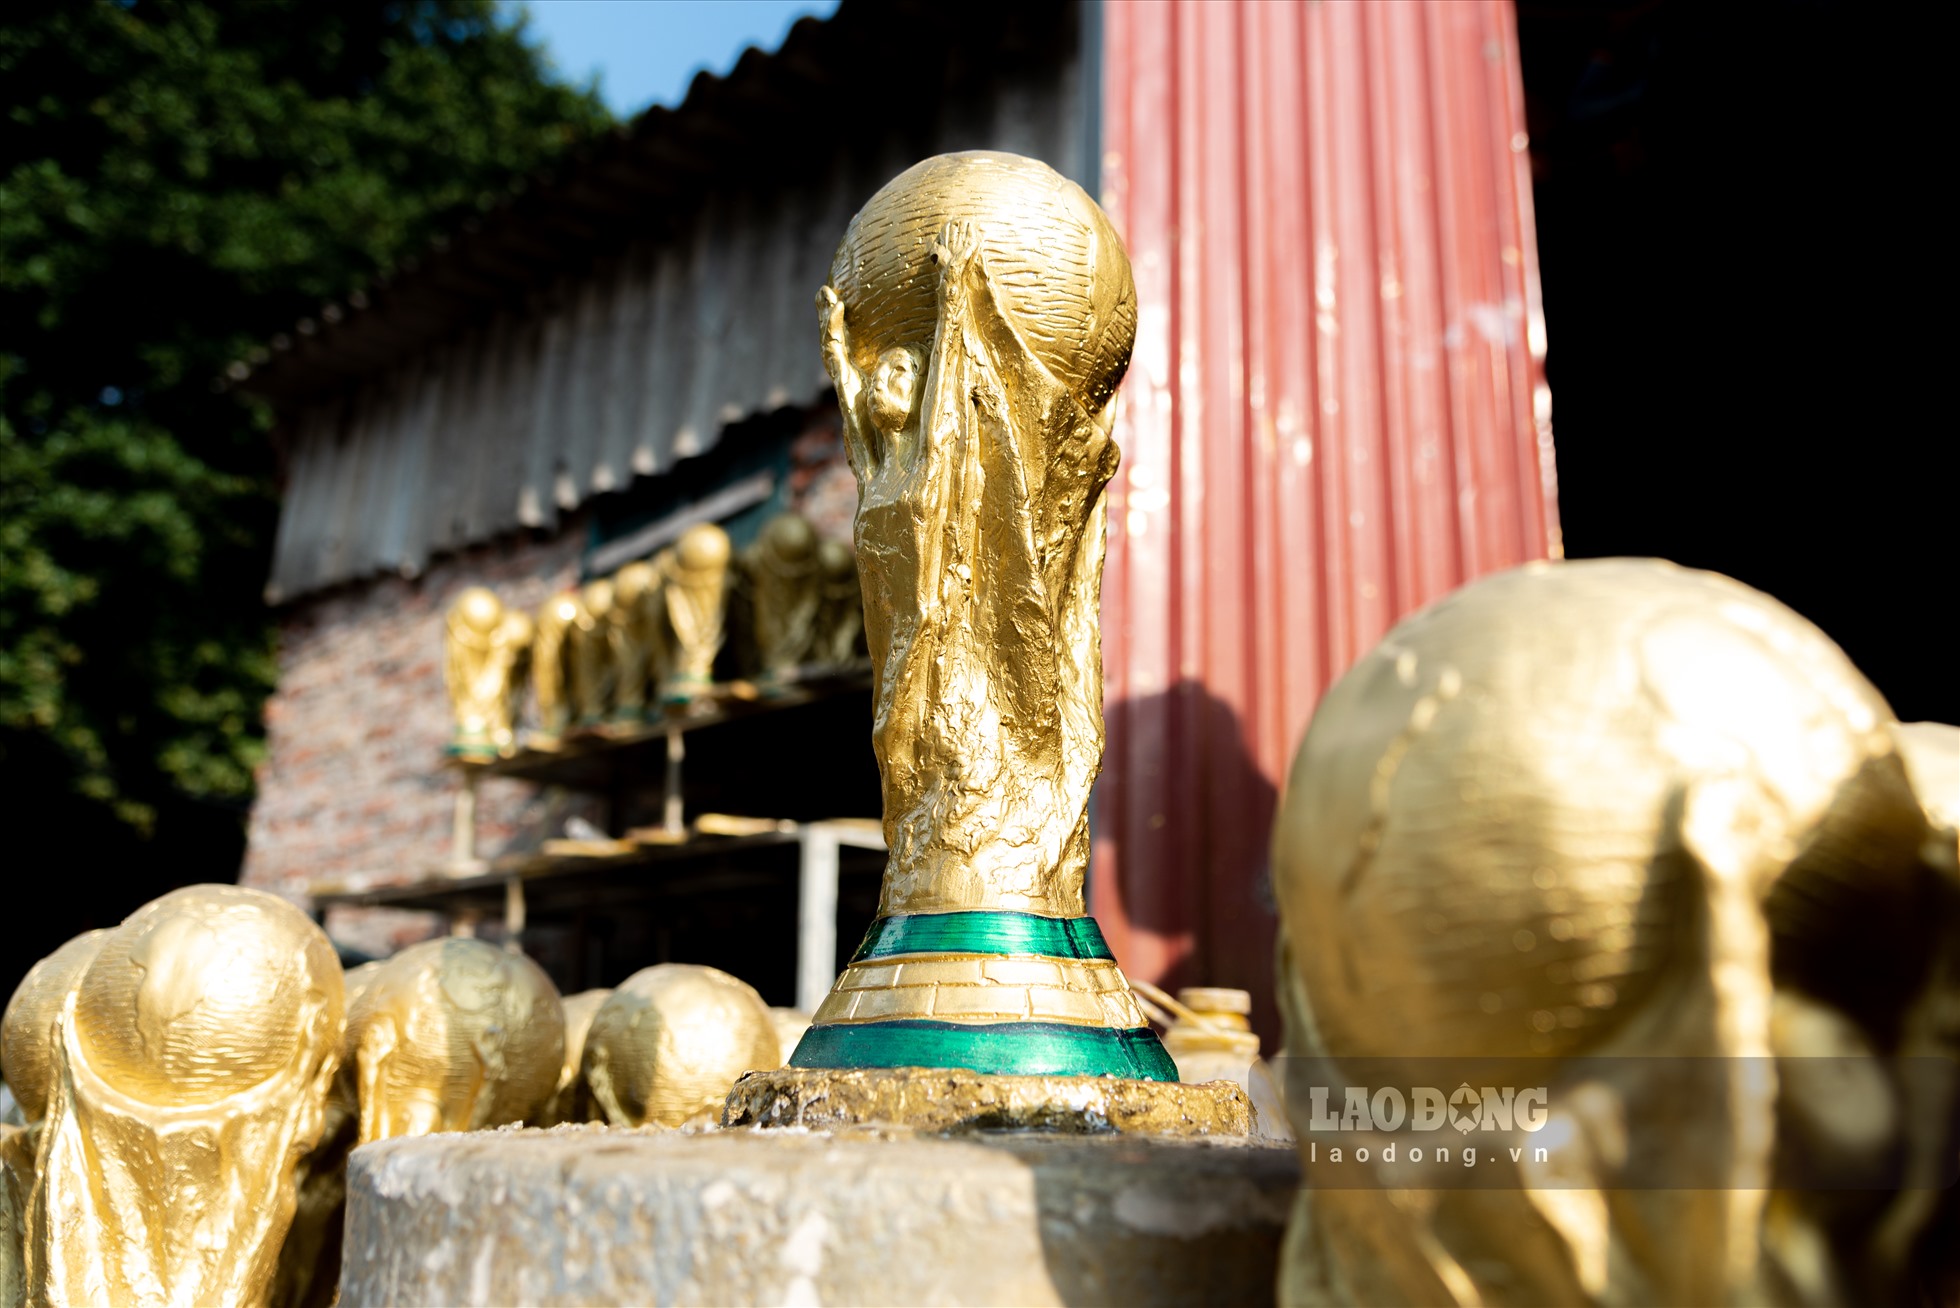 Cúp vàng FIFA thật cao 36,5cm và được làm từ 5kg vàng 18 carat . Đế có đường kính 13cm gồm hai lớp đá xanh, phía dưới có dòng chữ FIFA World Cup, bên trên xoắn ốc tạo hình 2 cầu thủ đang đón lấy quả địa cầu và nâng cao như một biểu tượng chiến thắng.